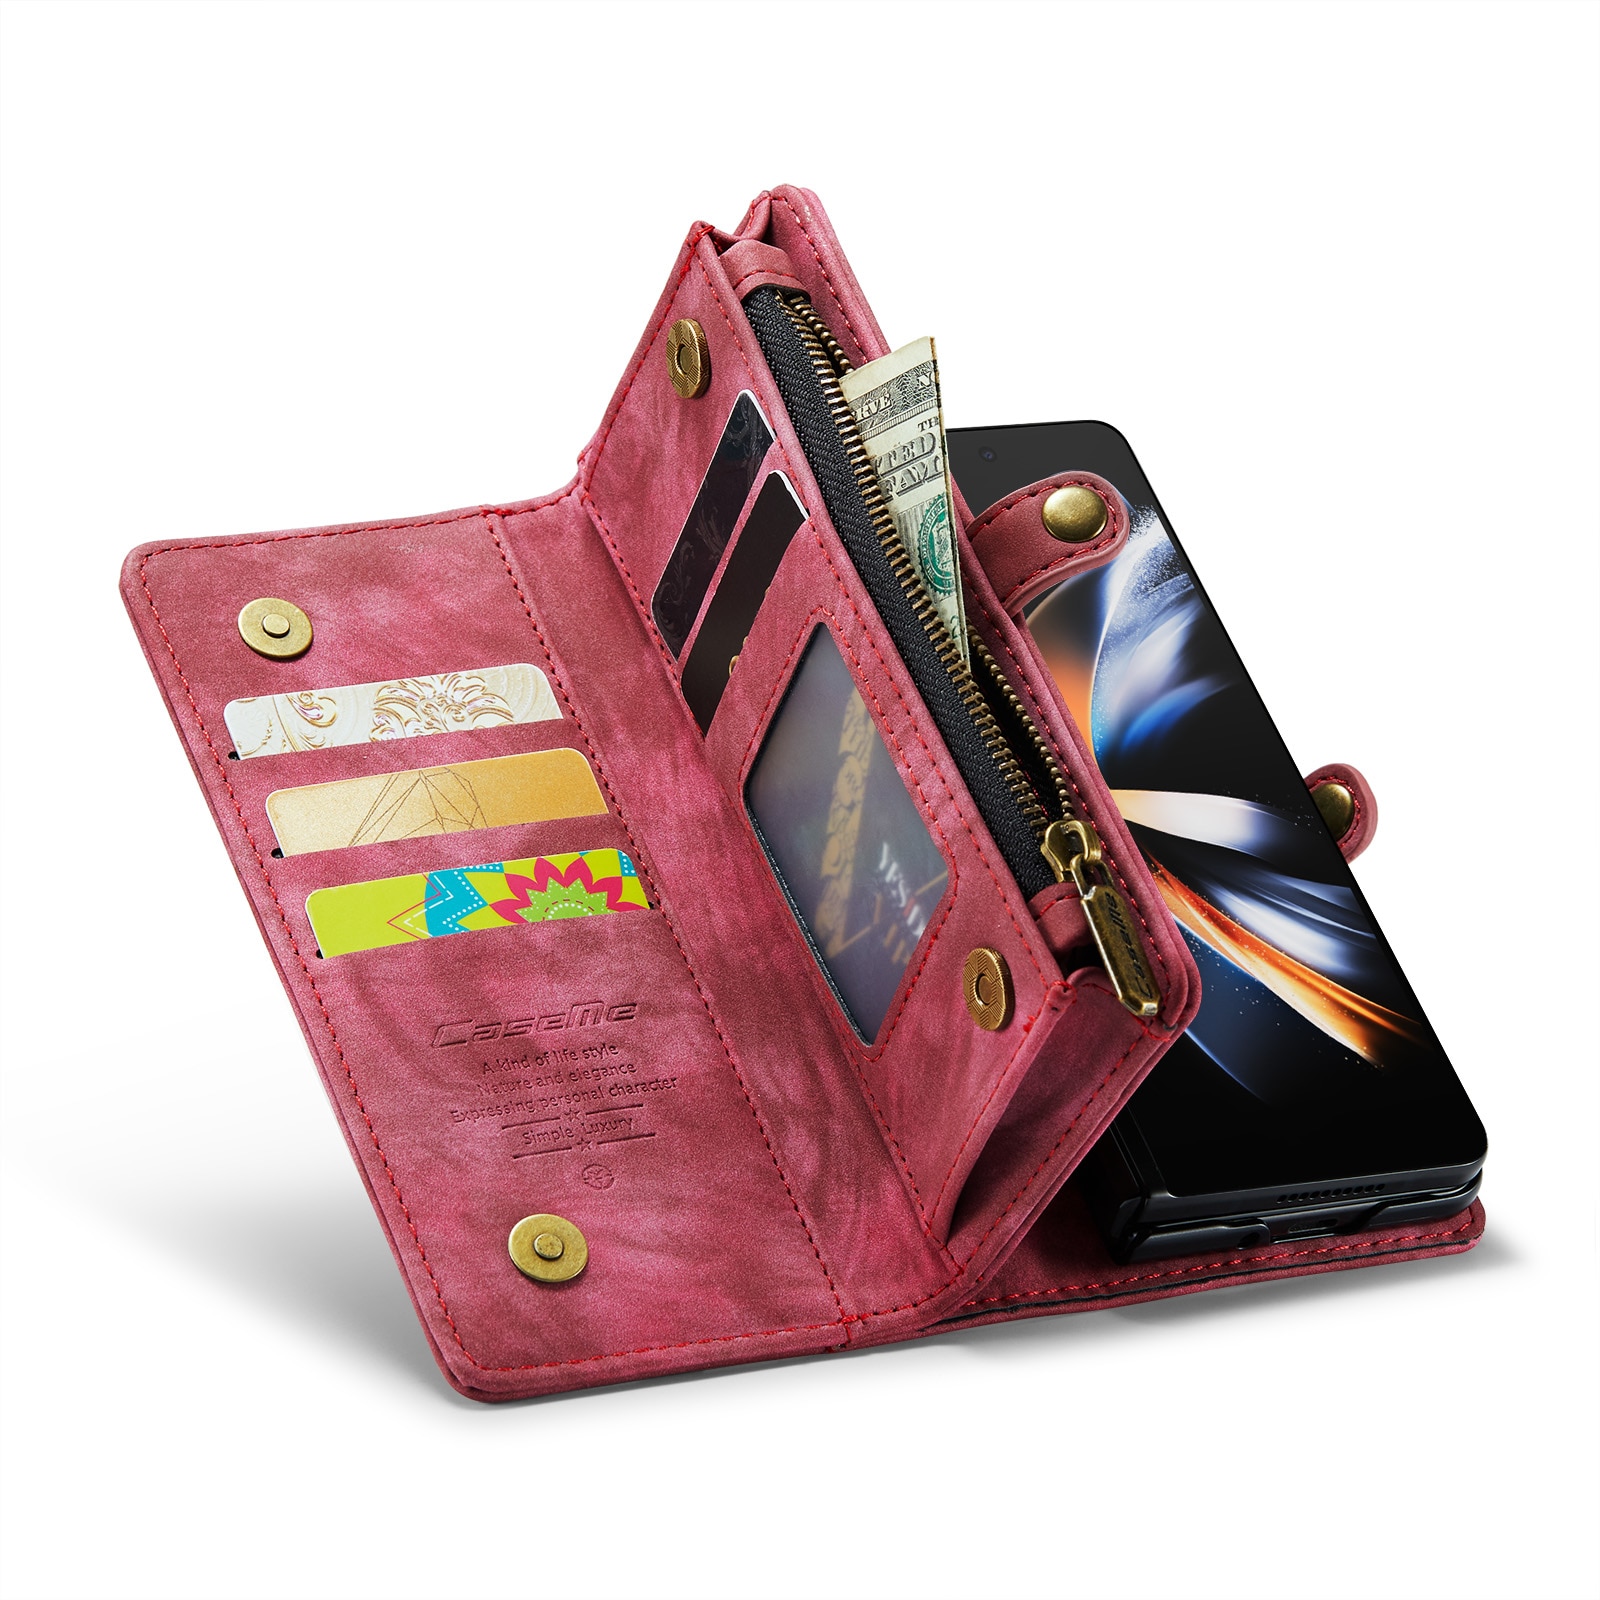 Samsung Galaxy Z Fold 4 Rymligt plånboksfodral med många kortfack, röd